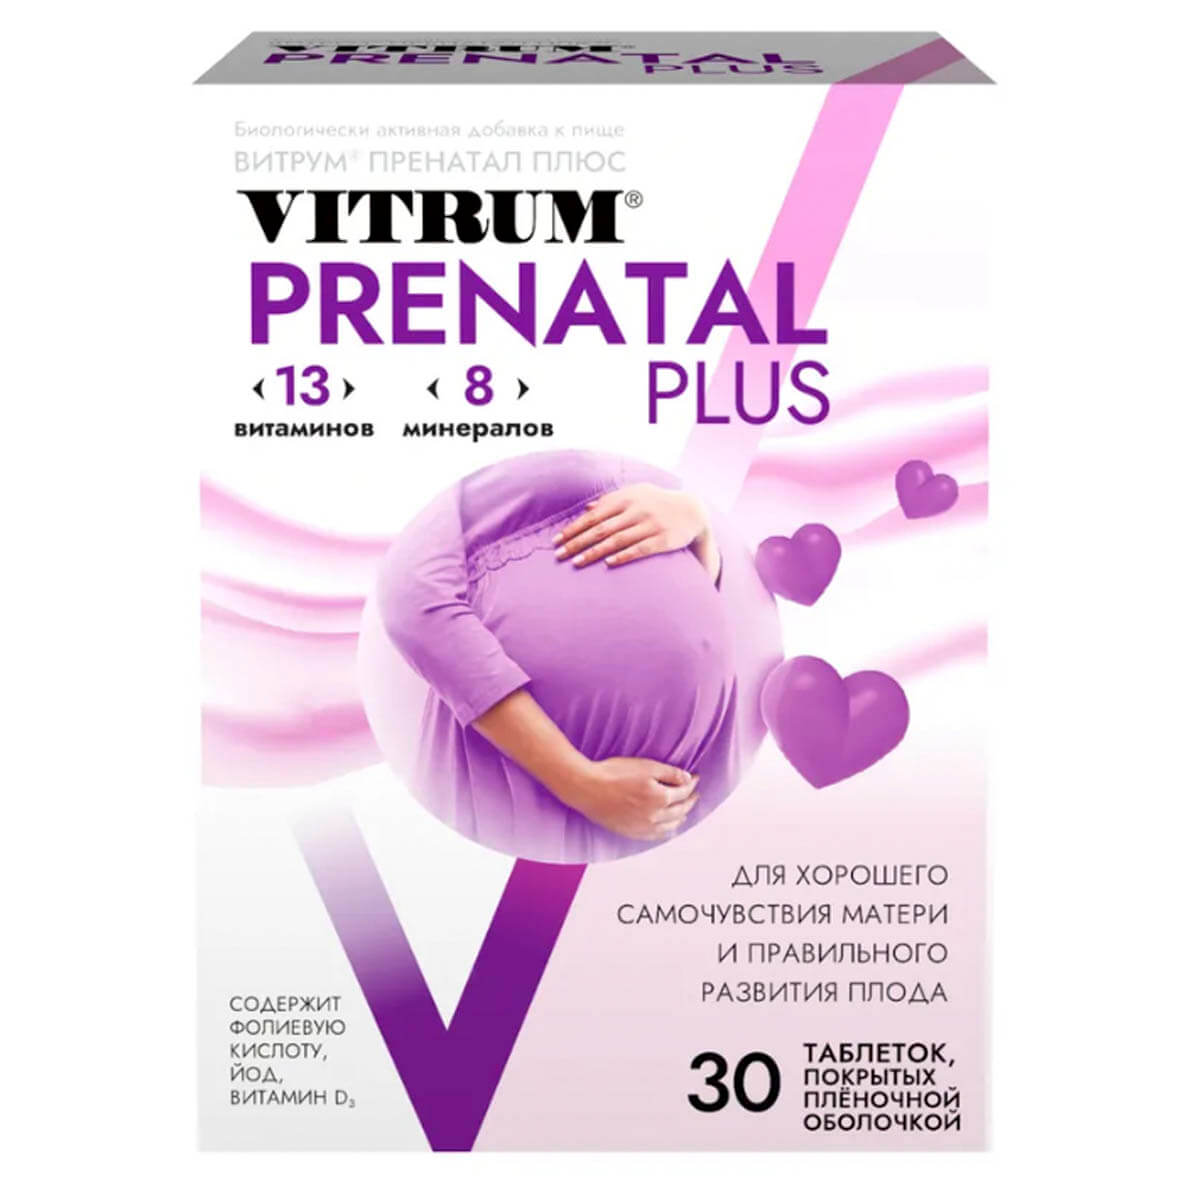 Комплекс витаминов Prenatal Plus для беременных, 30 таблеток, Vitrum